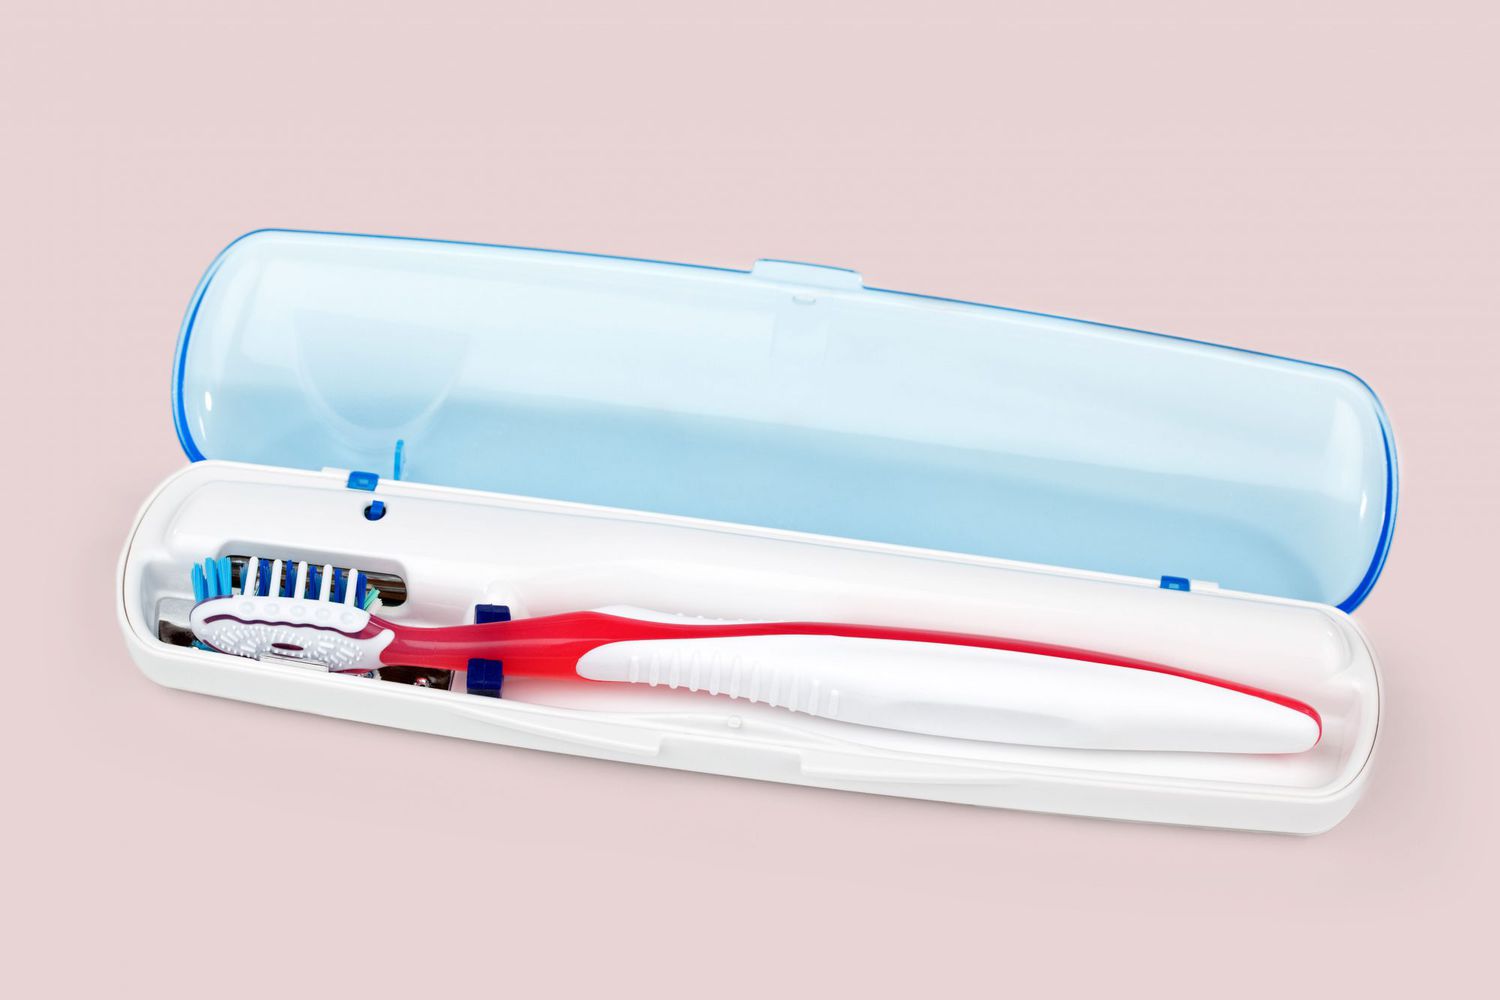 Toothbrush in sanitizing case